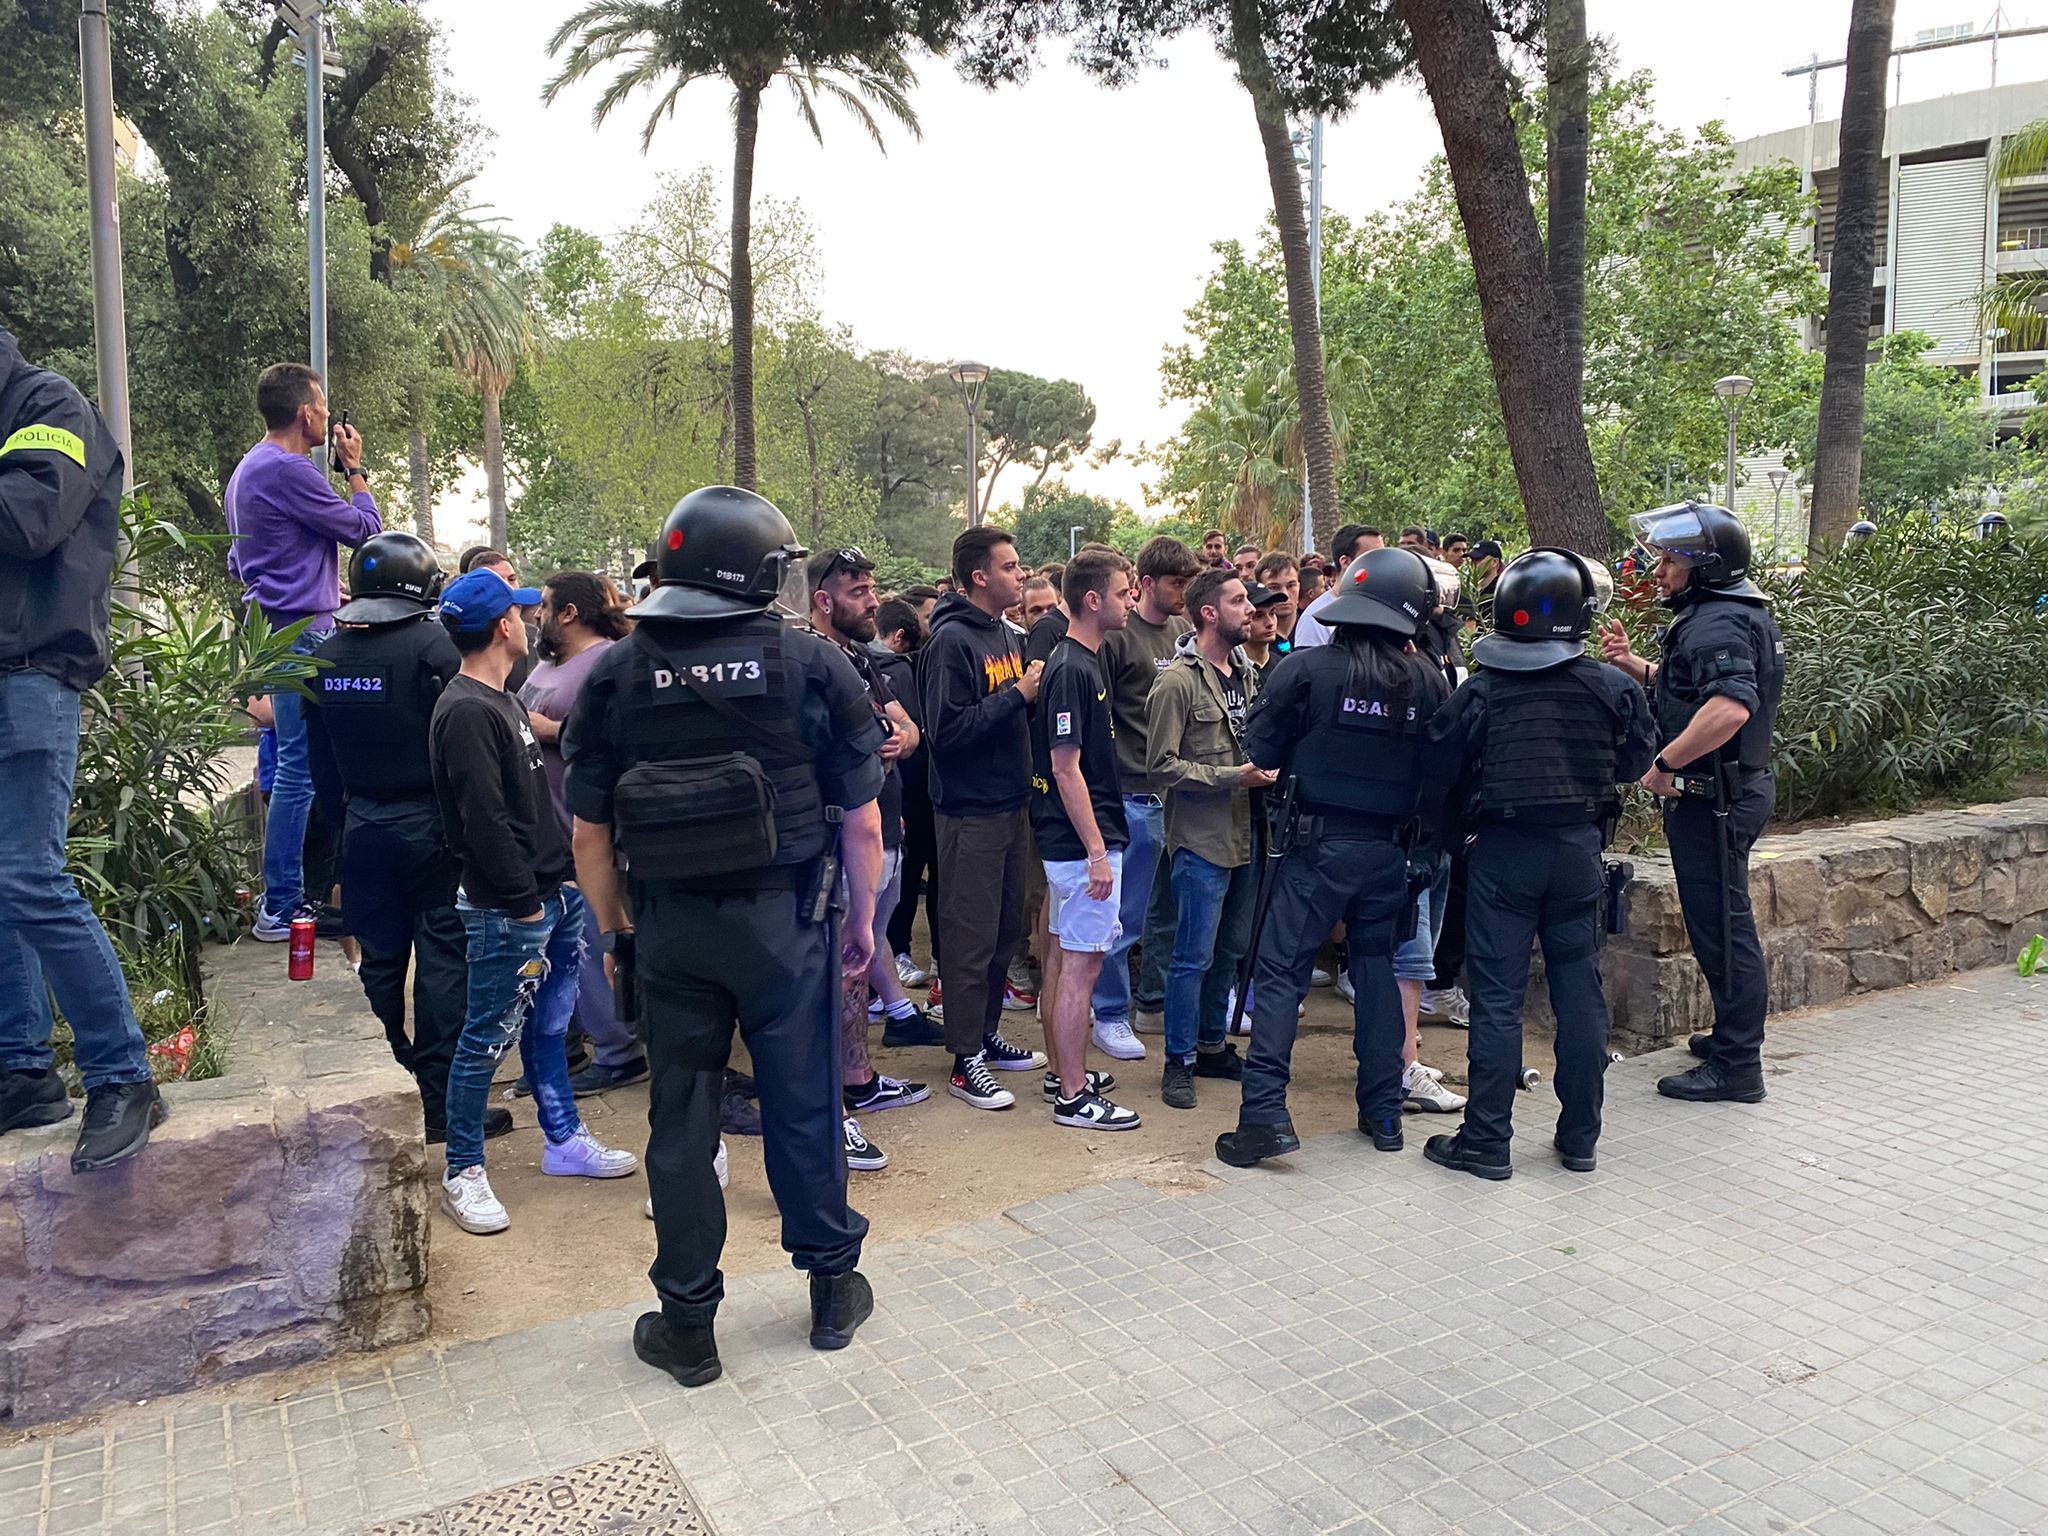 Dispositivo de los Mossos en el Camp Nou para detener Boixos Nois violentos